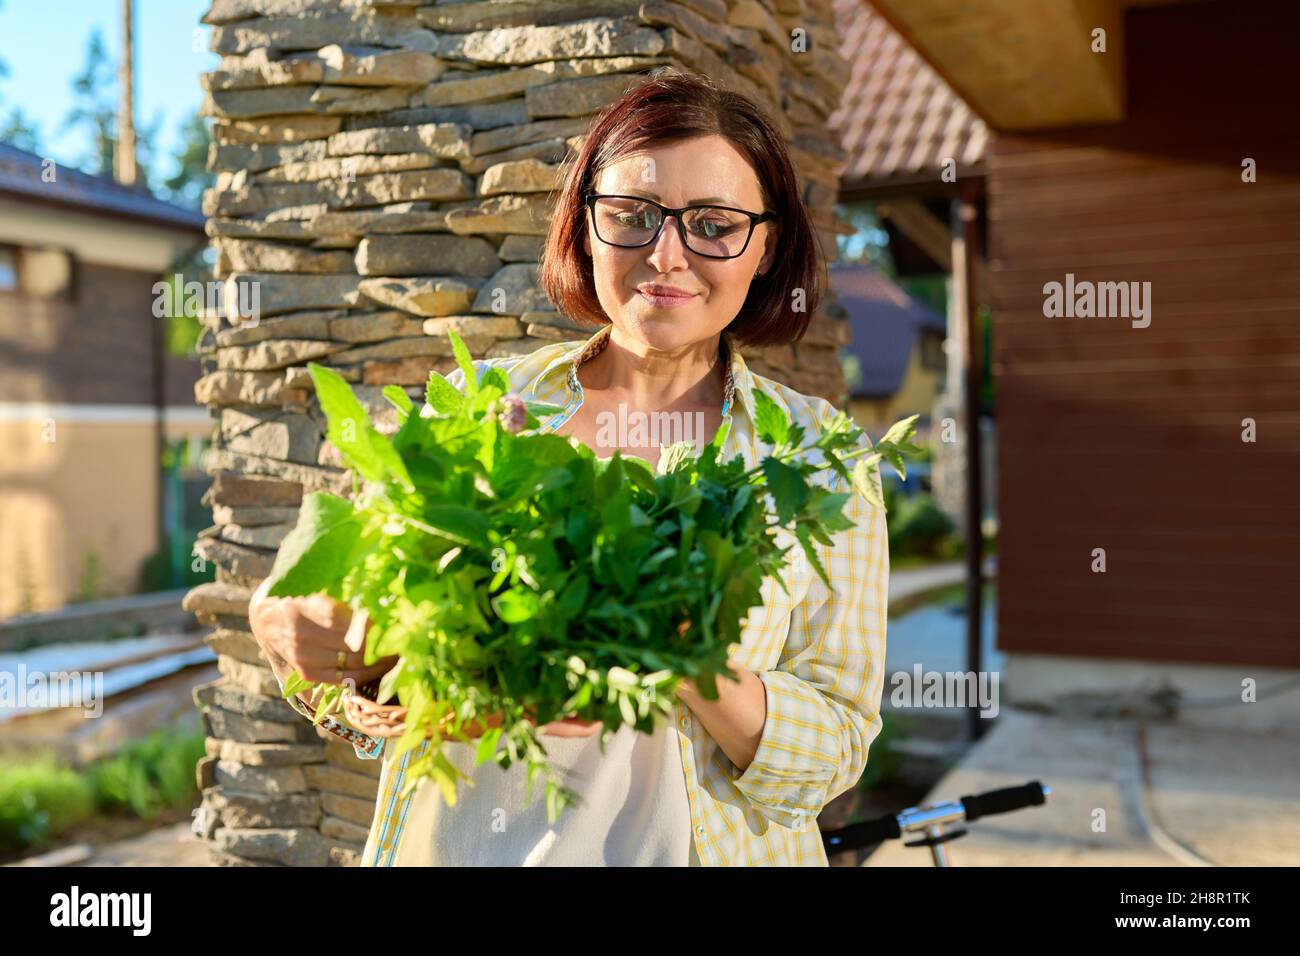 Frau im Garten hält Korb mit frisch gepflückten Ernte von grünen würzig duftenden Kräutern Stockfoto